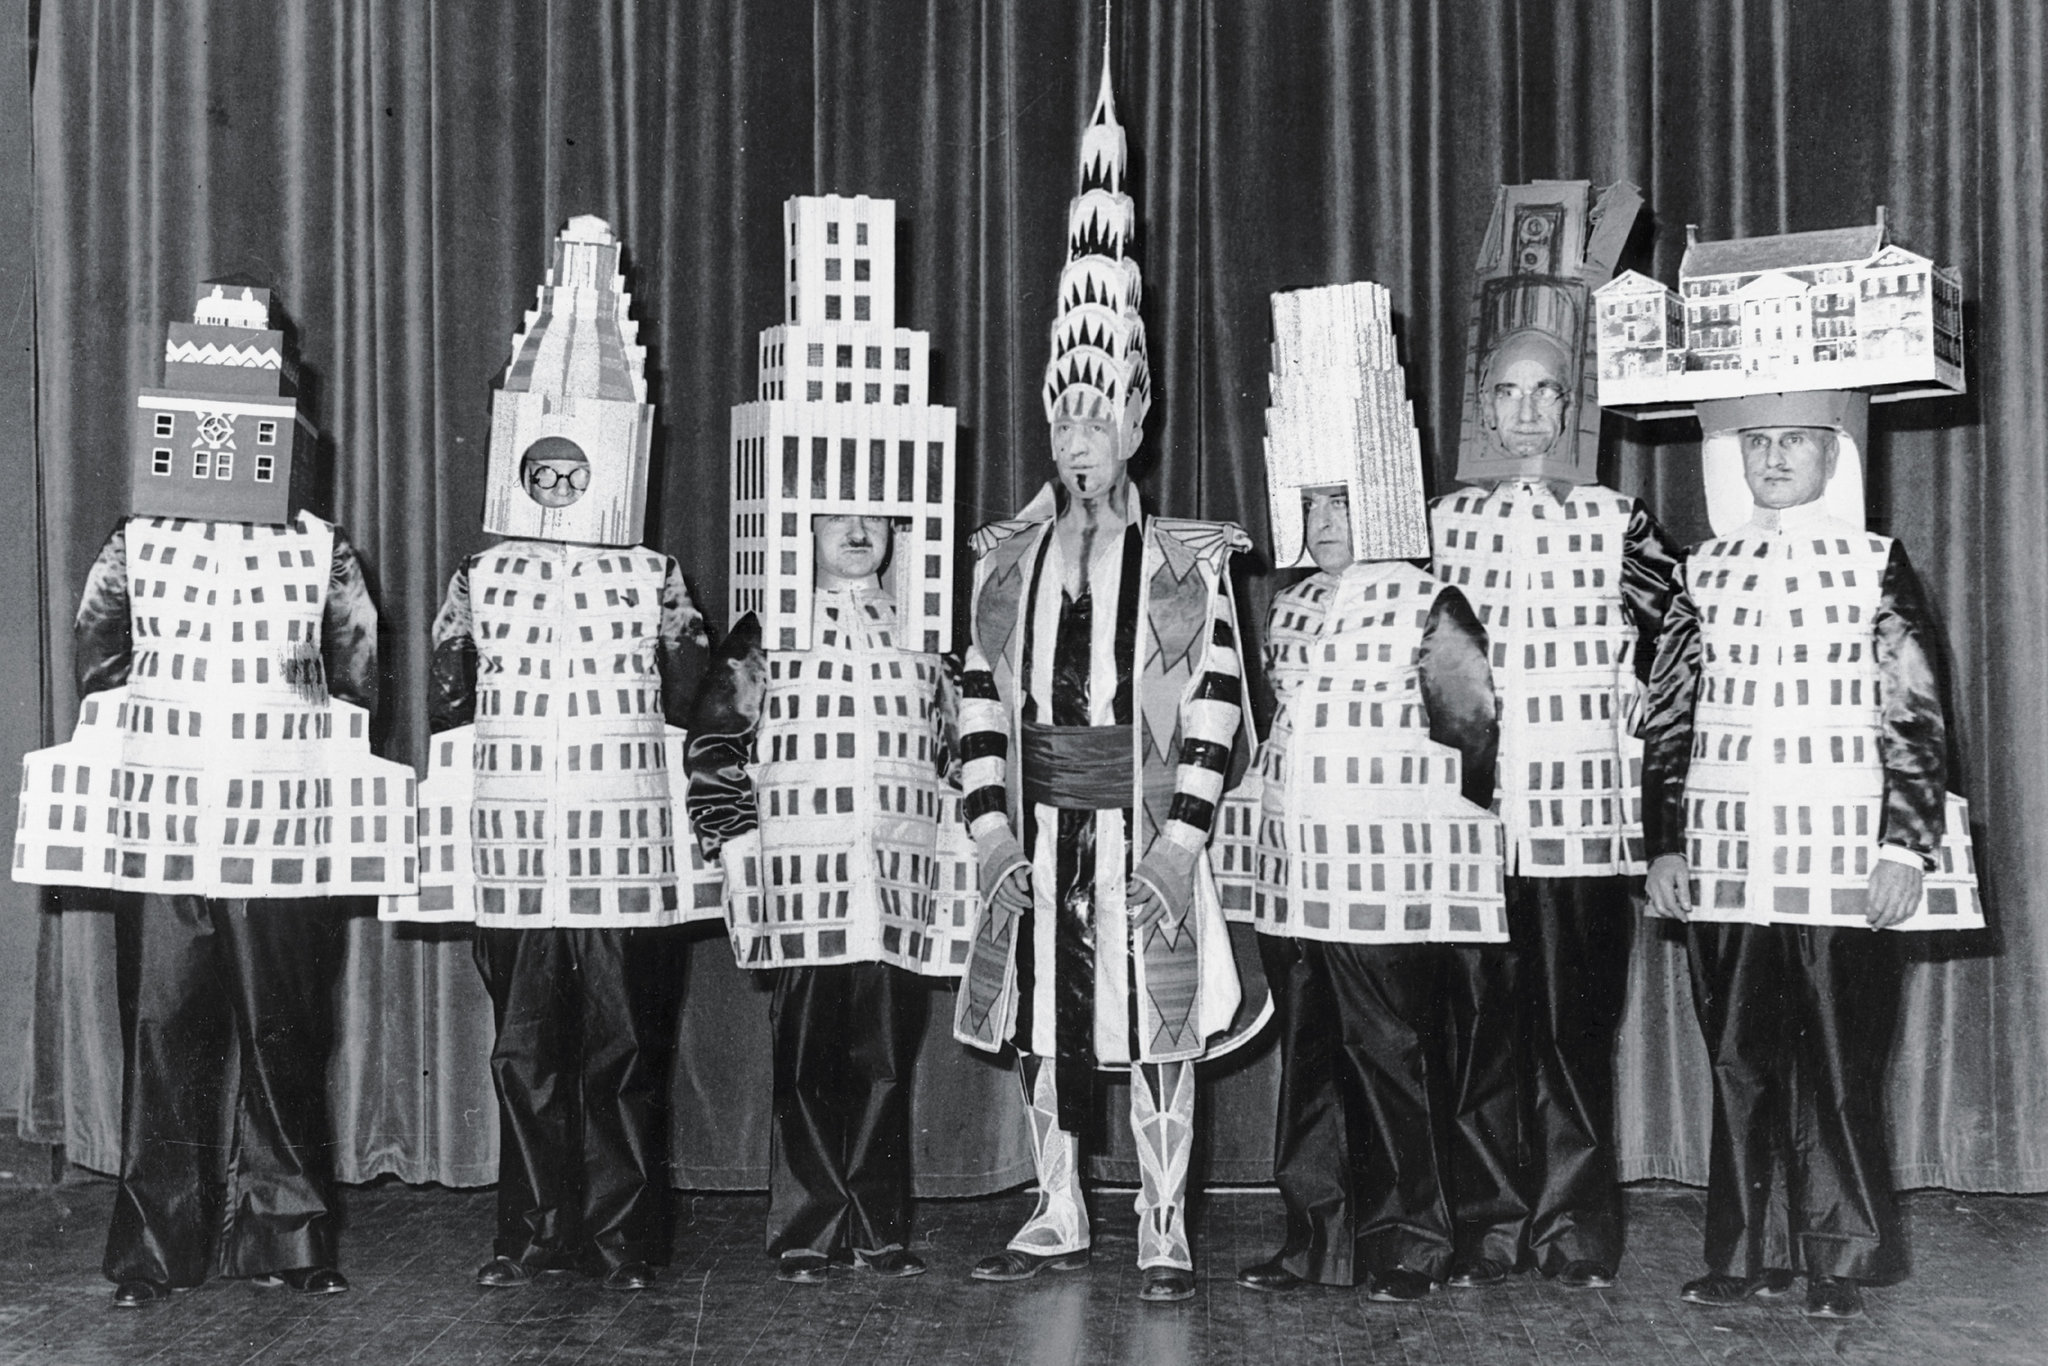 Больше двадцати архитекторов пришли на нью-йоркский Бал изящных искусств 1931 года в костюмах зданий, которые они сами спроектировали. Слева направо: Стюарт Уокер в костюме Фуллеровского небоскреба, Леонард Шульце, одетый в отель «Уолдорф-Астория», Эли Жак Кан в образе небоскреба корпорации «Сквибб», Уильям ван Ален в костюме Крайслер-билдинг, Даниэль Уэйд в башне «Метрополитен-Лайф», Ральф Уокер в макете Уолл-стрит-билдинг и Джозеф Фридлэндер, наряженный в Нью-Йоркский городской музей.